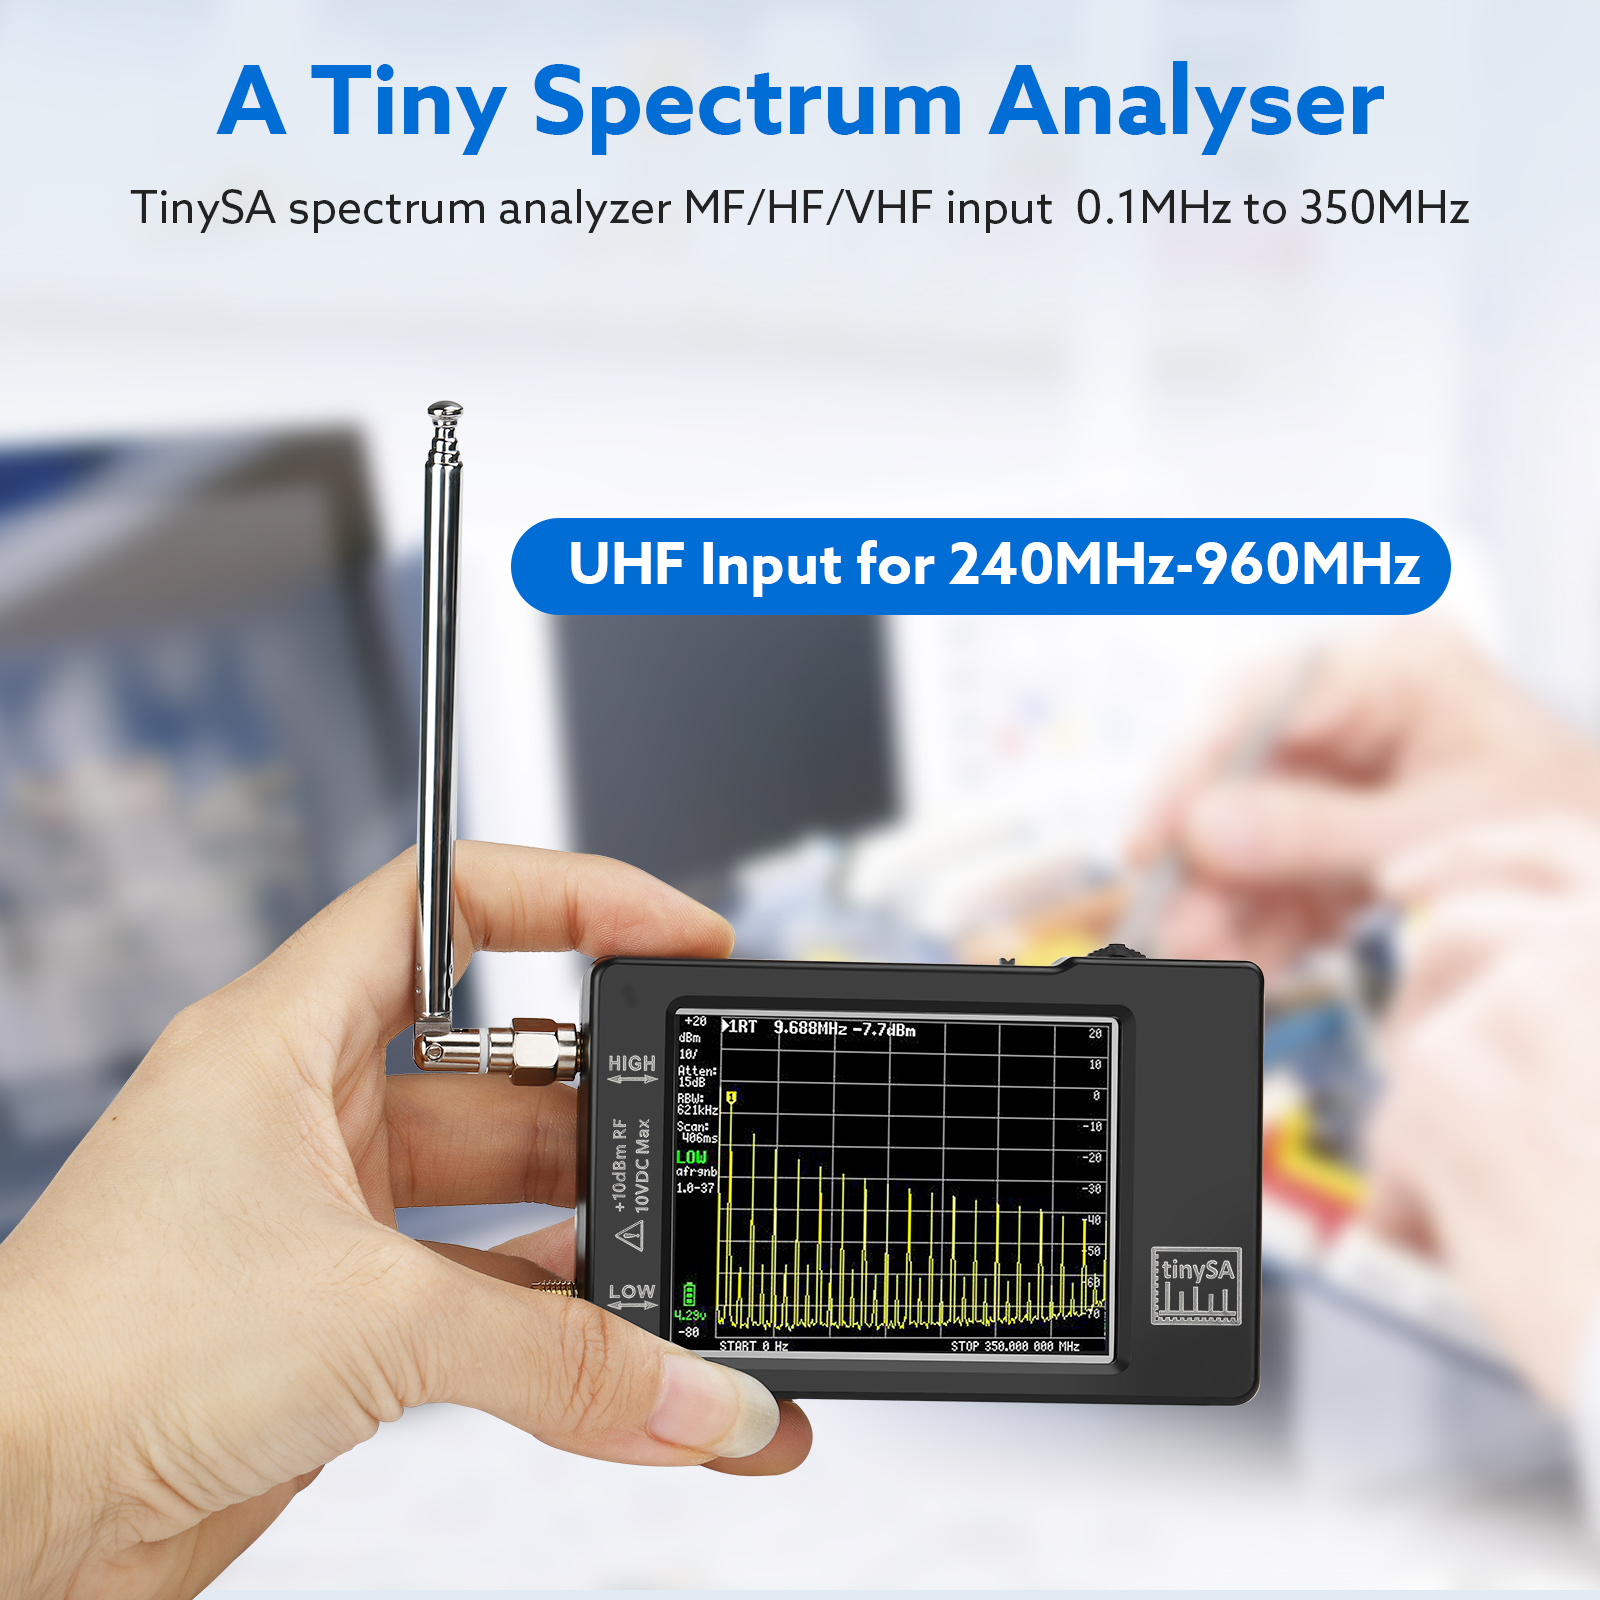 Аналізатор спектру tinySA 960MHz